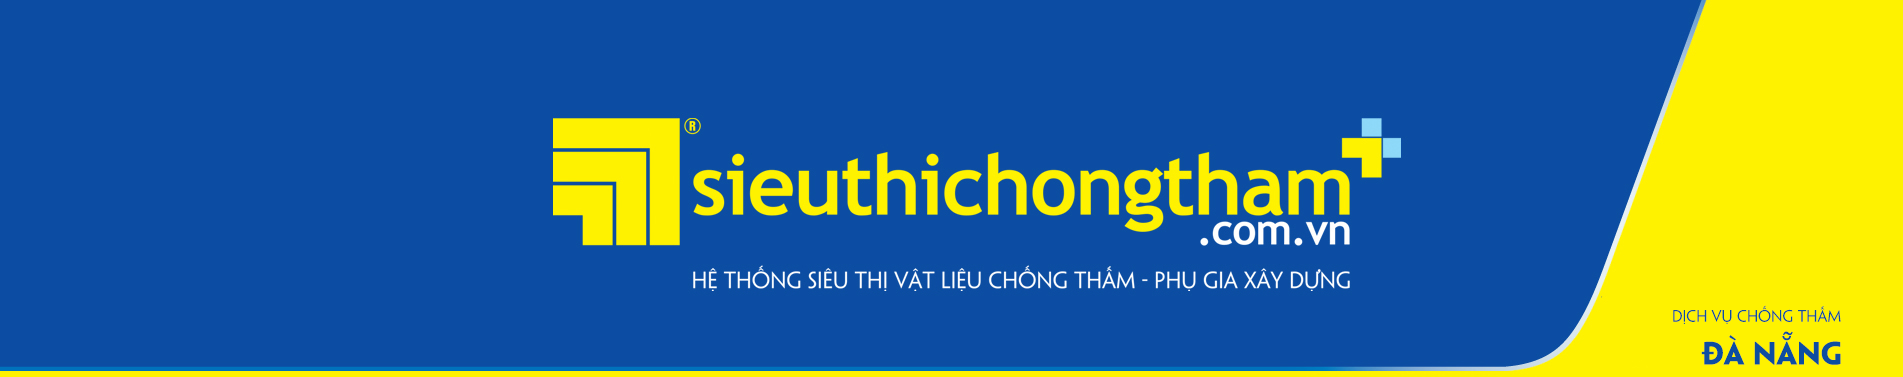 Dich Vu Chong Tham Da Nang